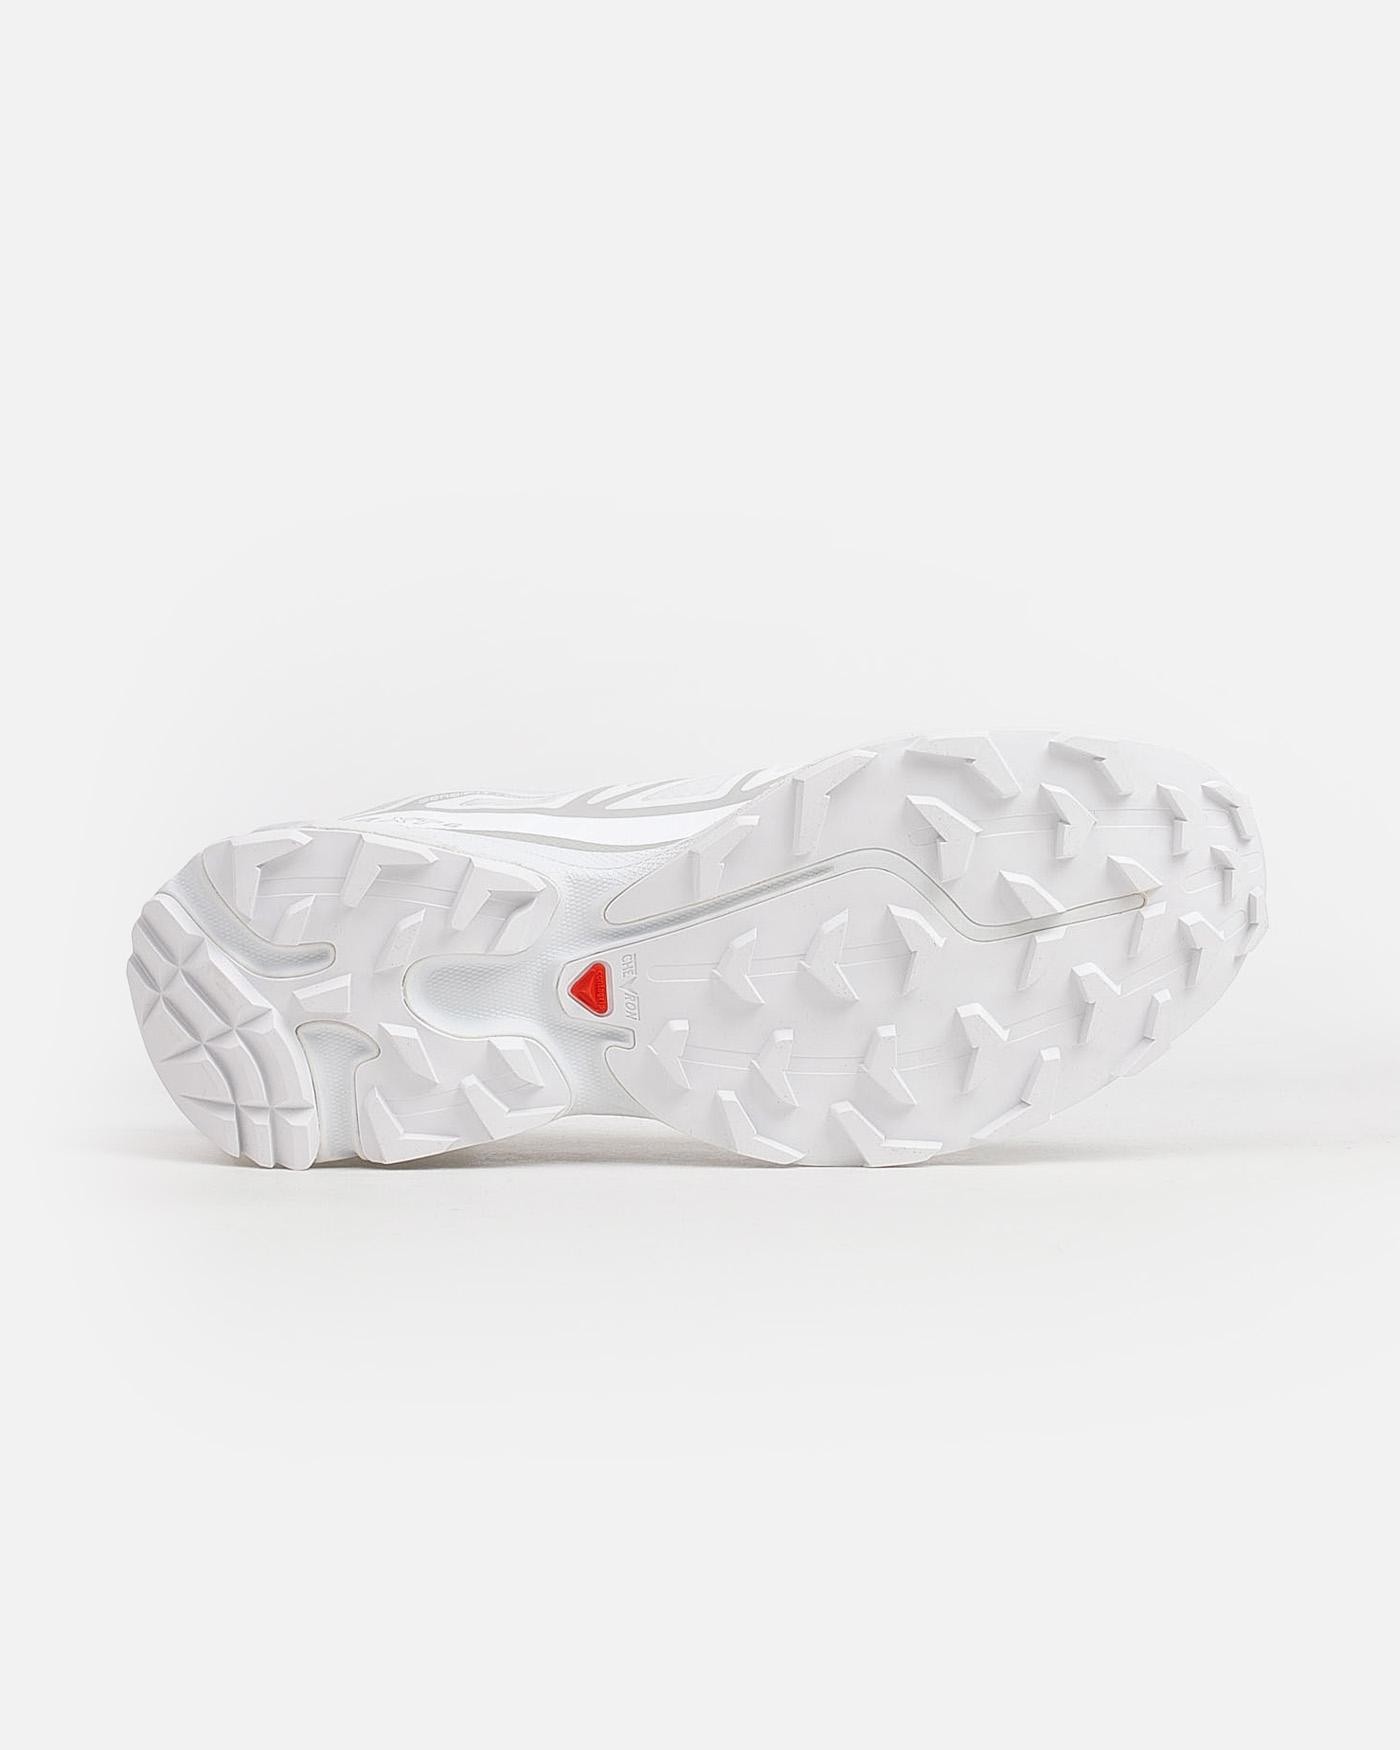 salomon-zapatillas-xt-6-lunar-rock-sneakers-white-blancas-3